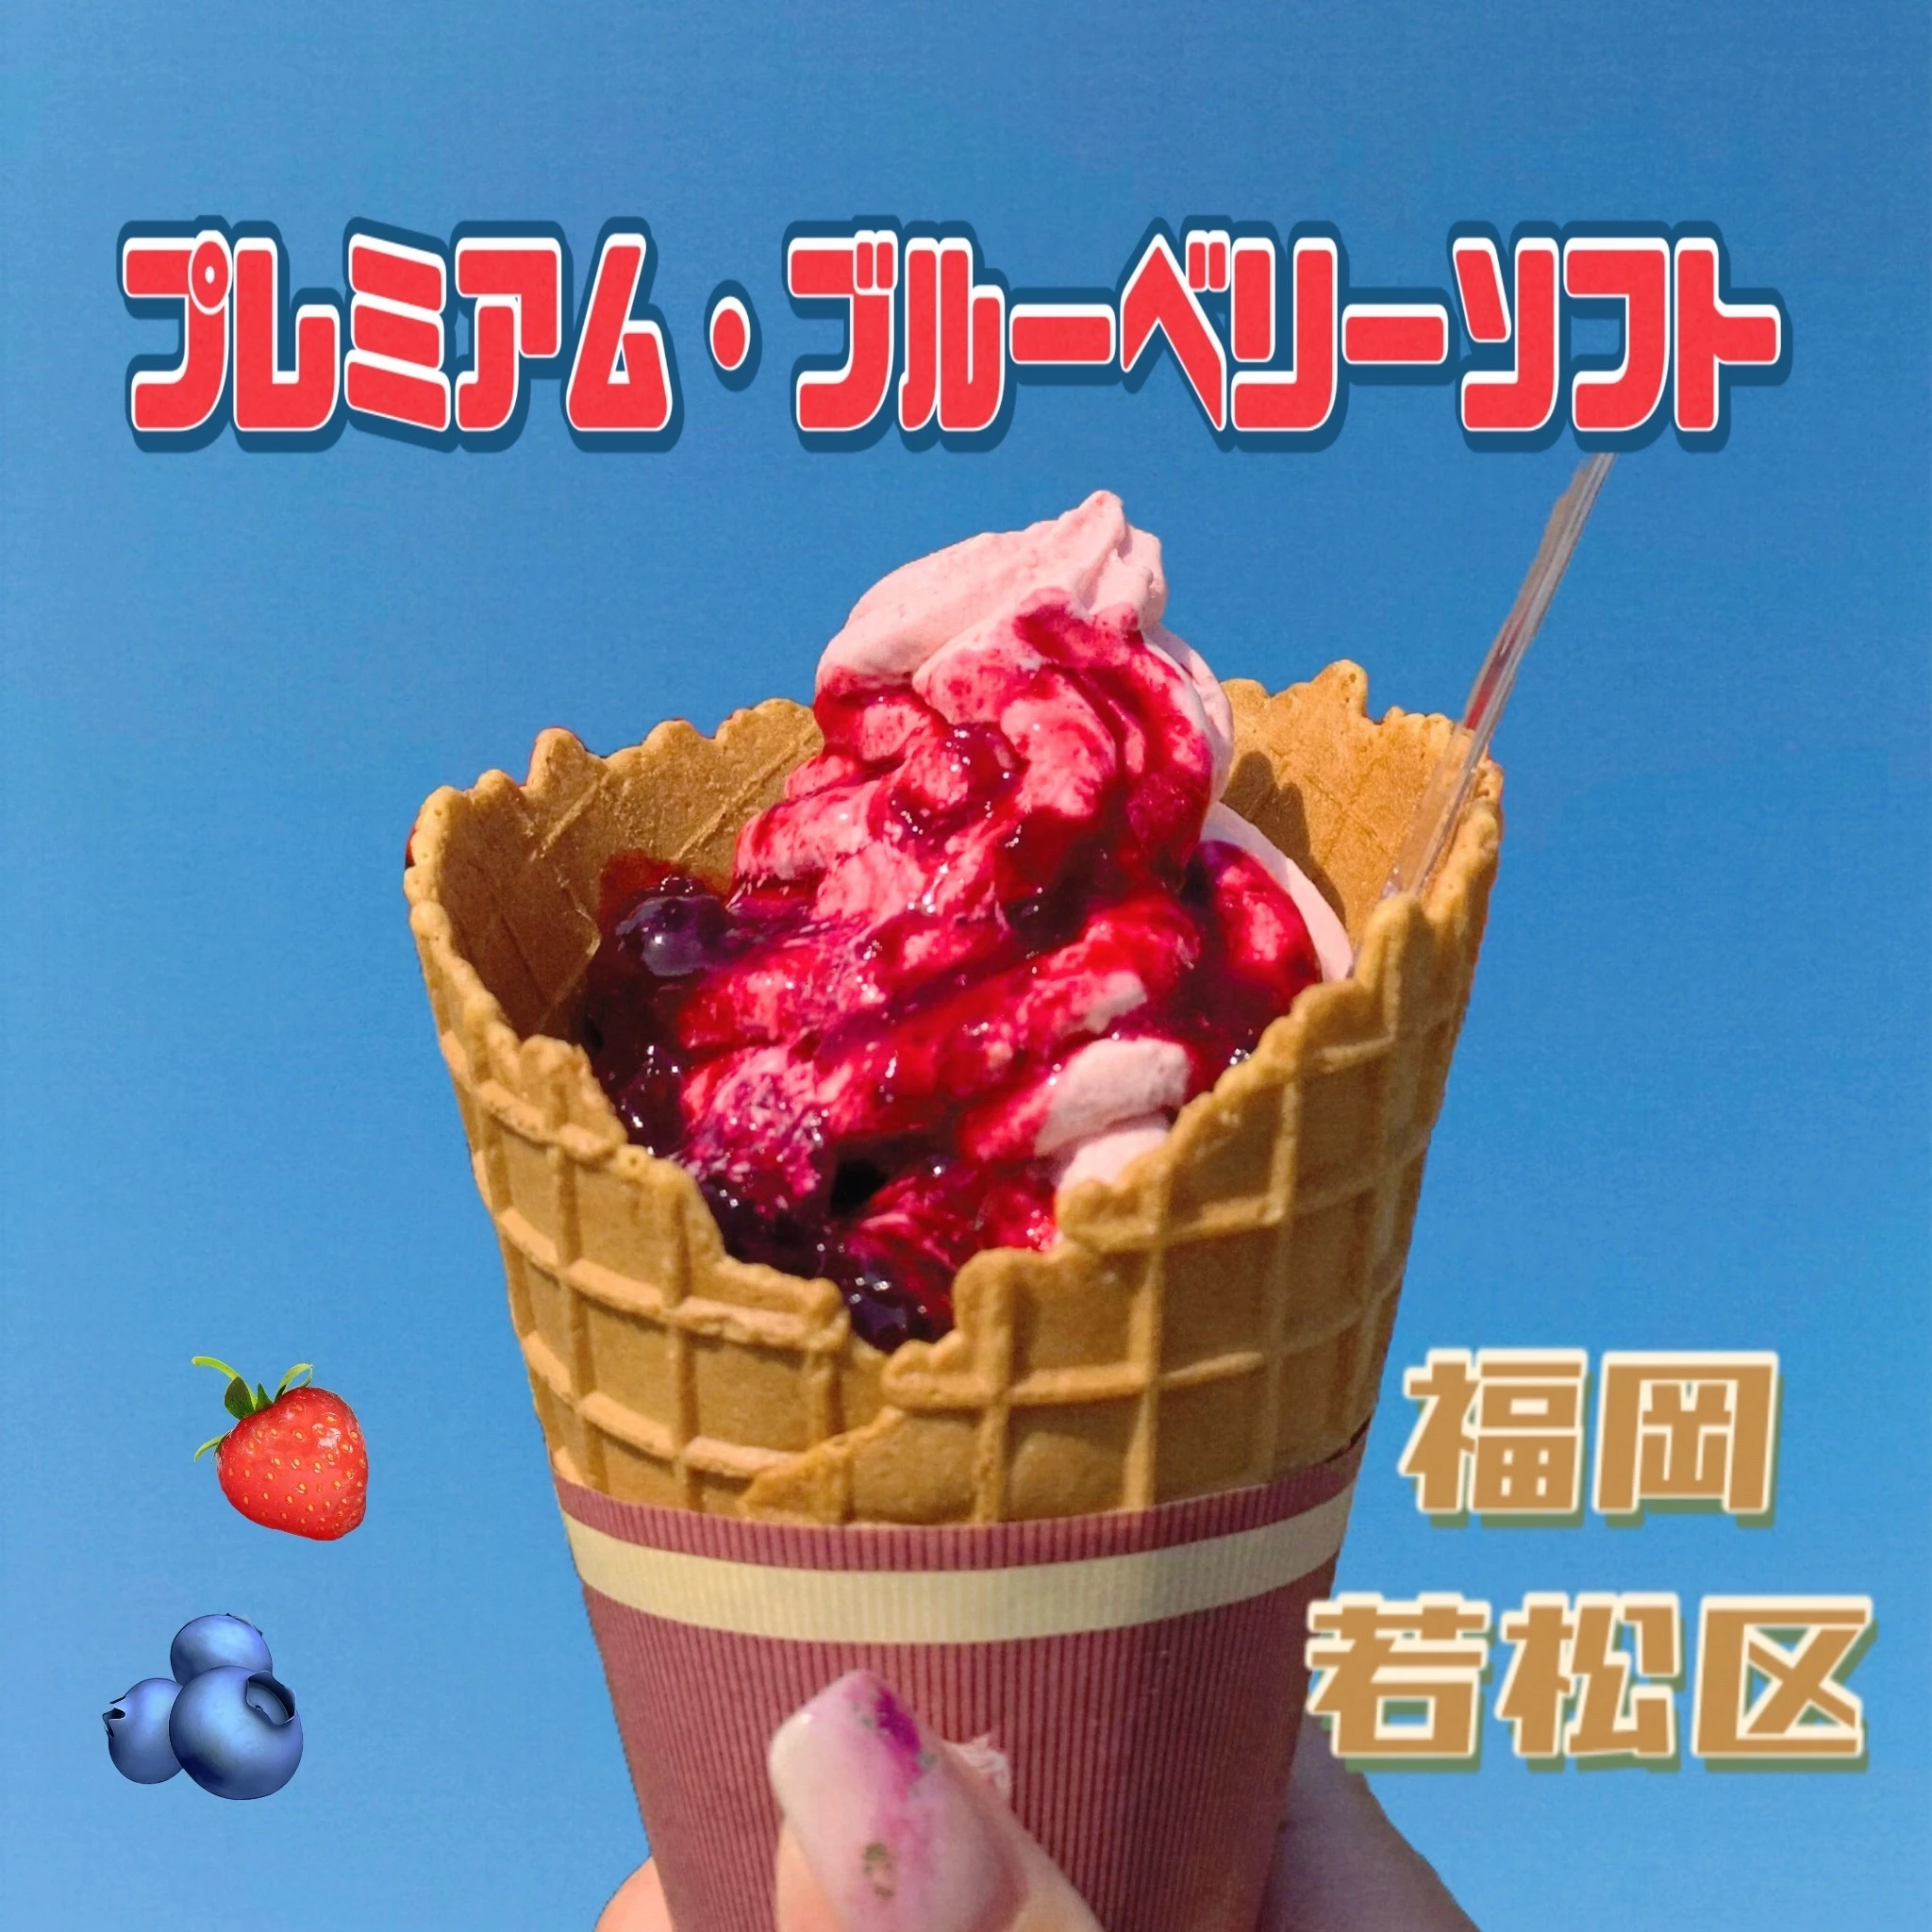 【福岡・スイーツ】行列の出来る 「果実ブレンド・ソフトクリーム」_1_1